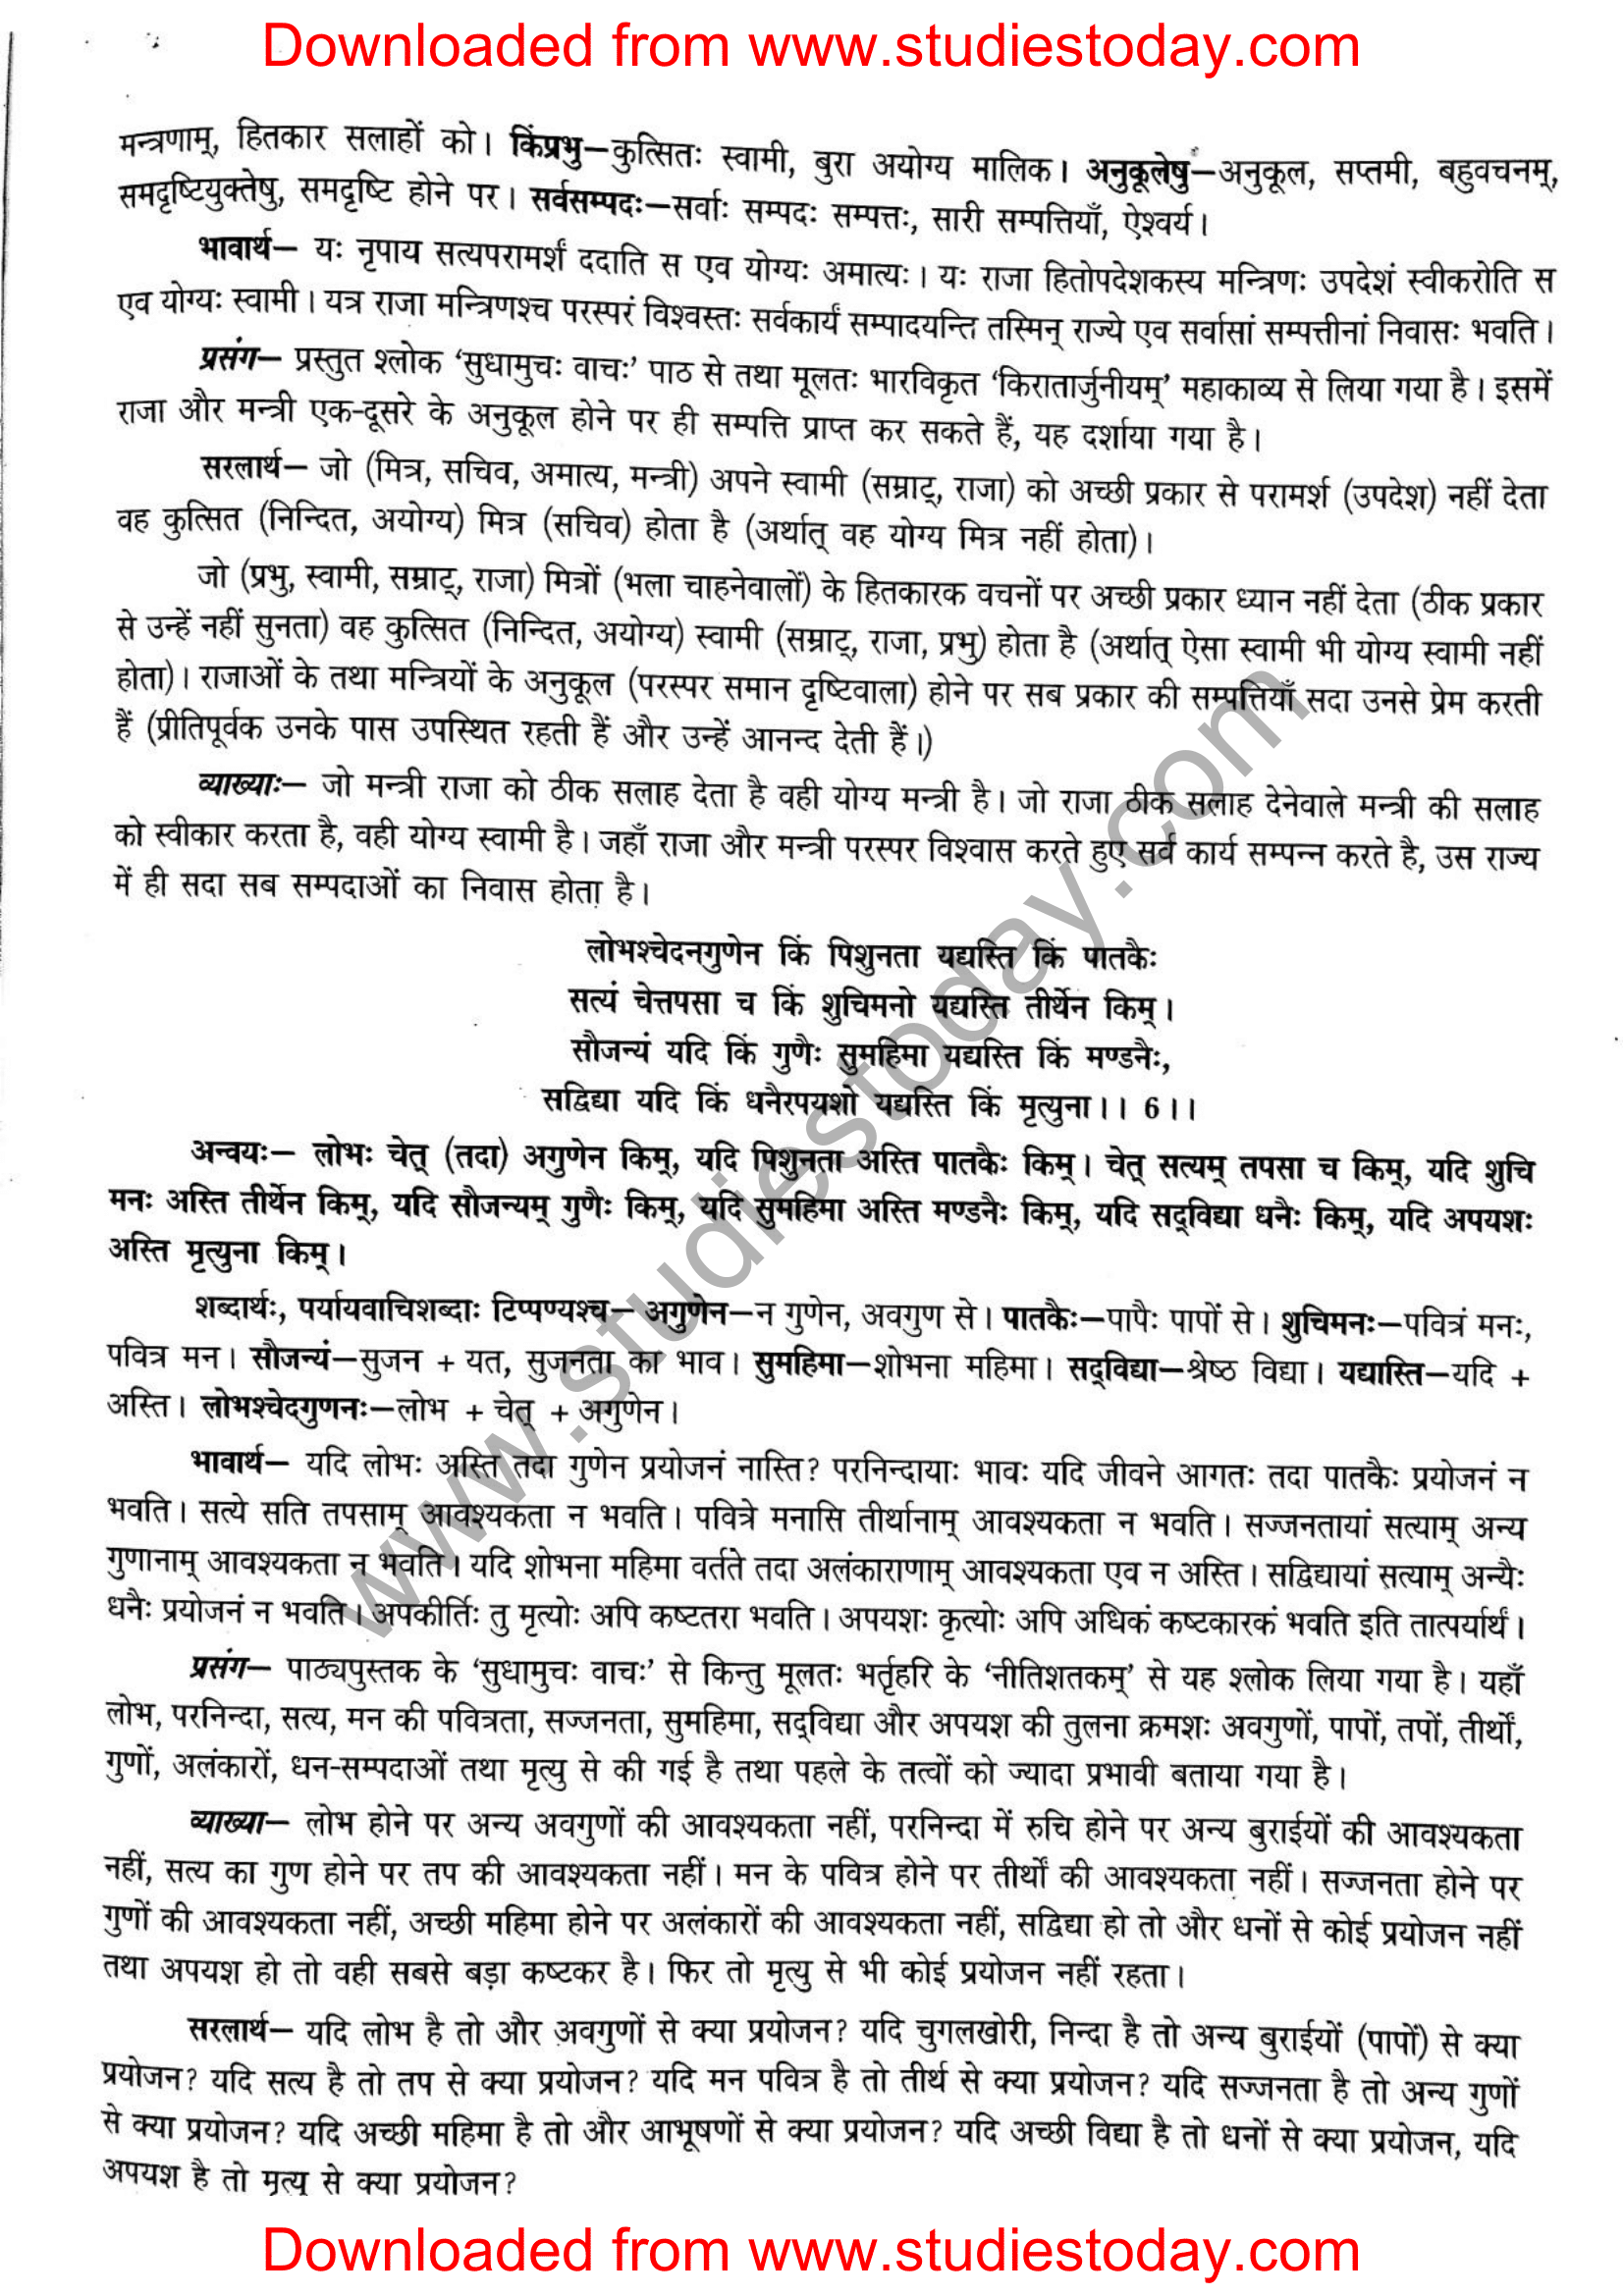 ncert-solutions-class-12-sanskrit-ritikia-chapter-6-04